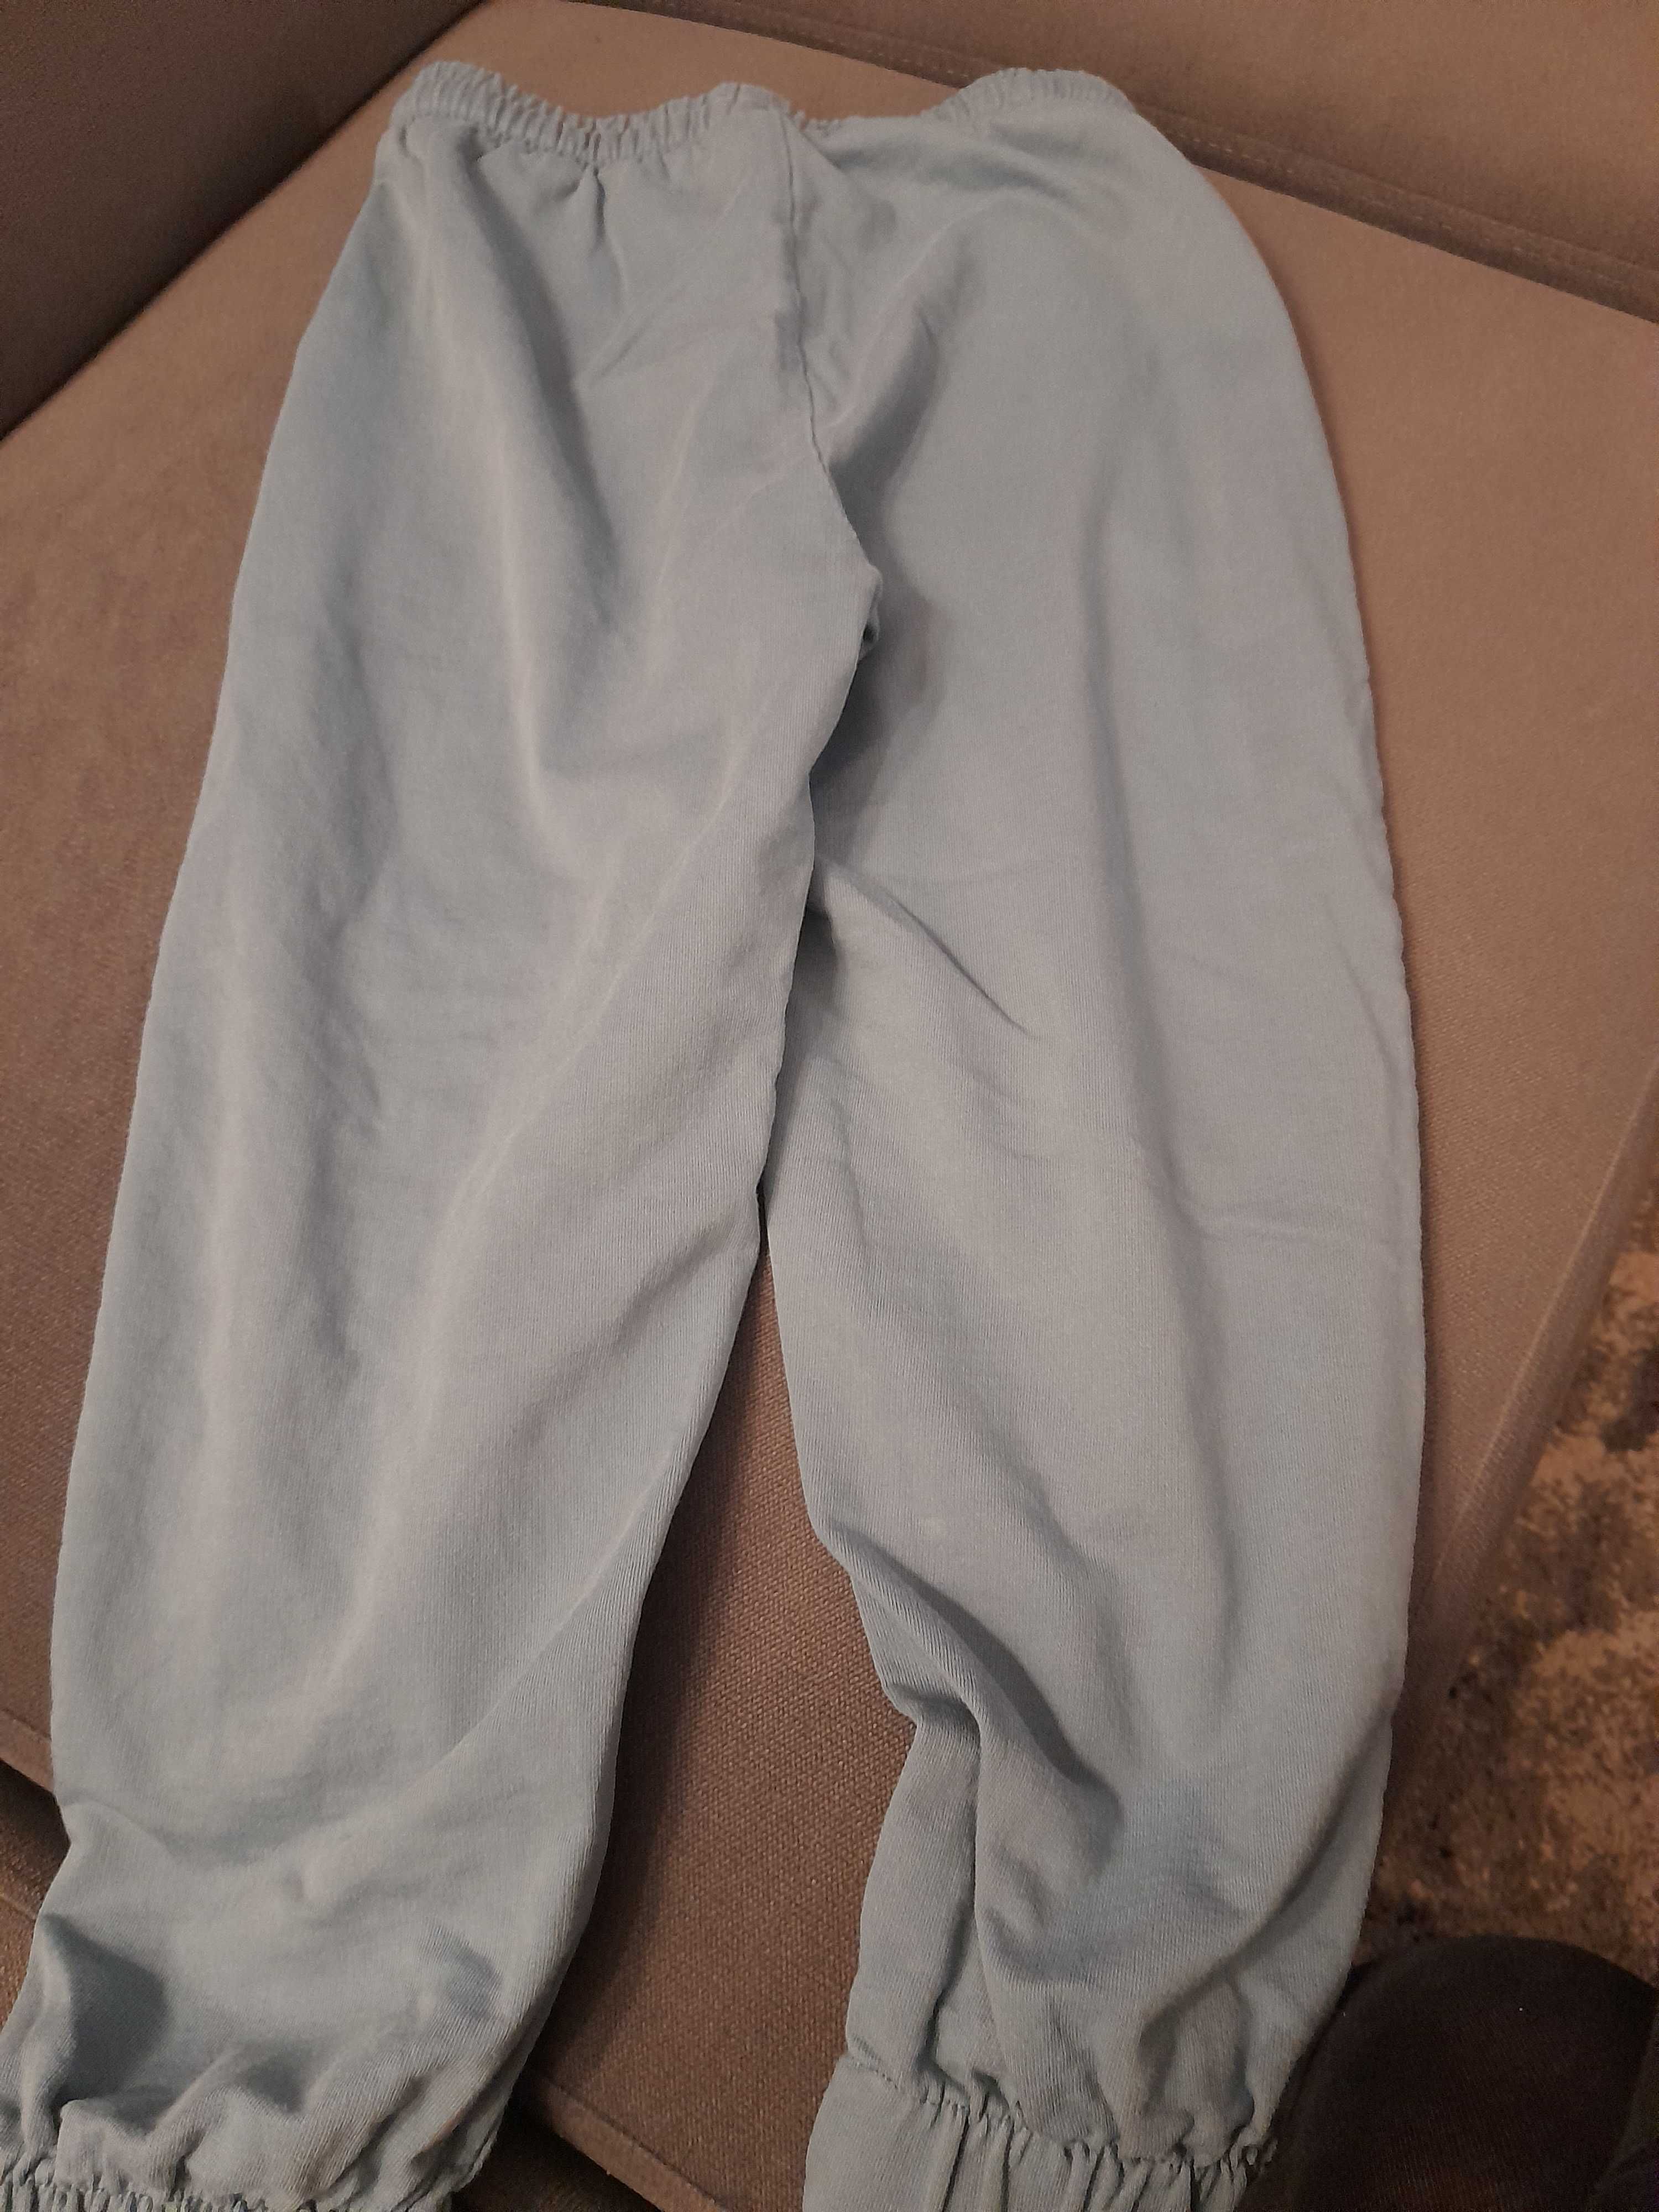 Spodnie dresowe dla chłopca marki Lincoln&Sharks w rozmiarze 134